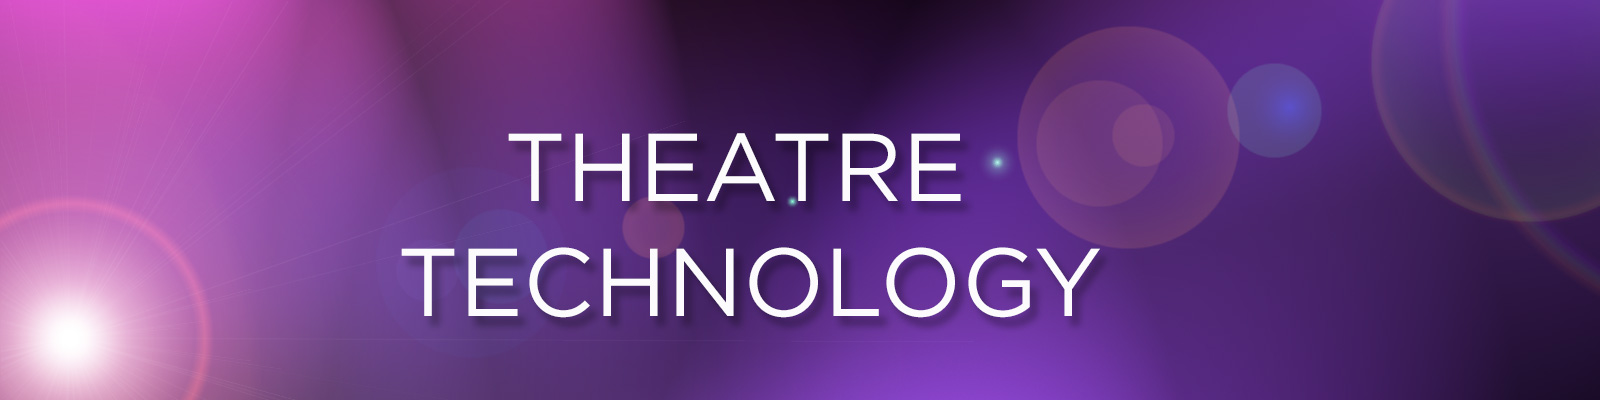 Theatre Technology Header